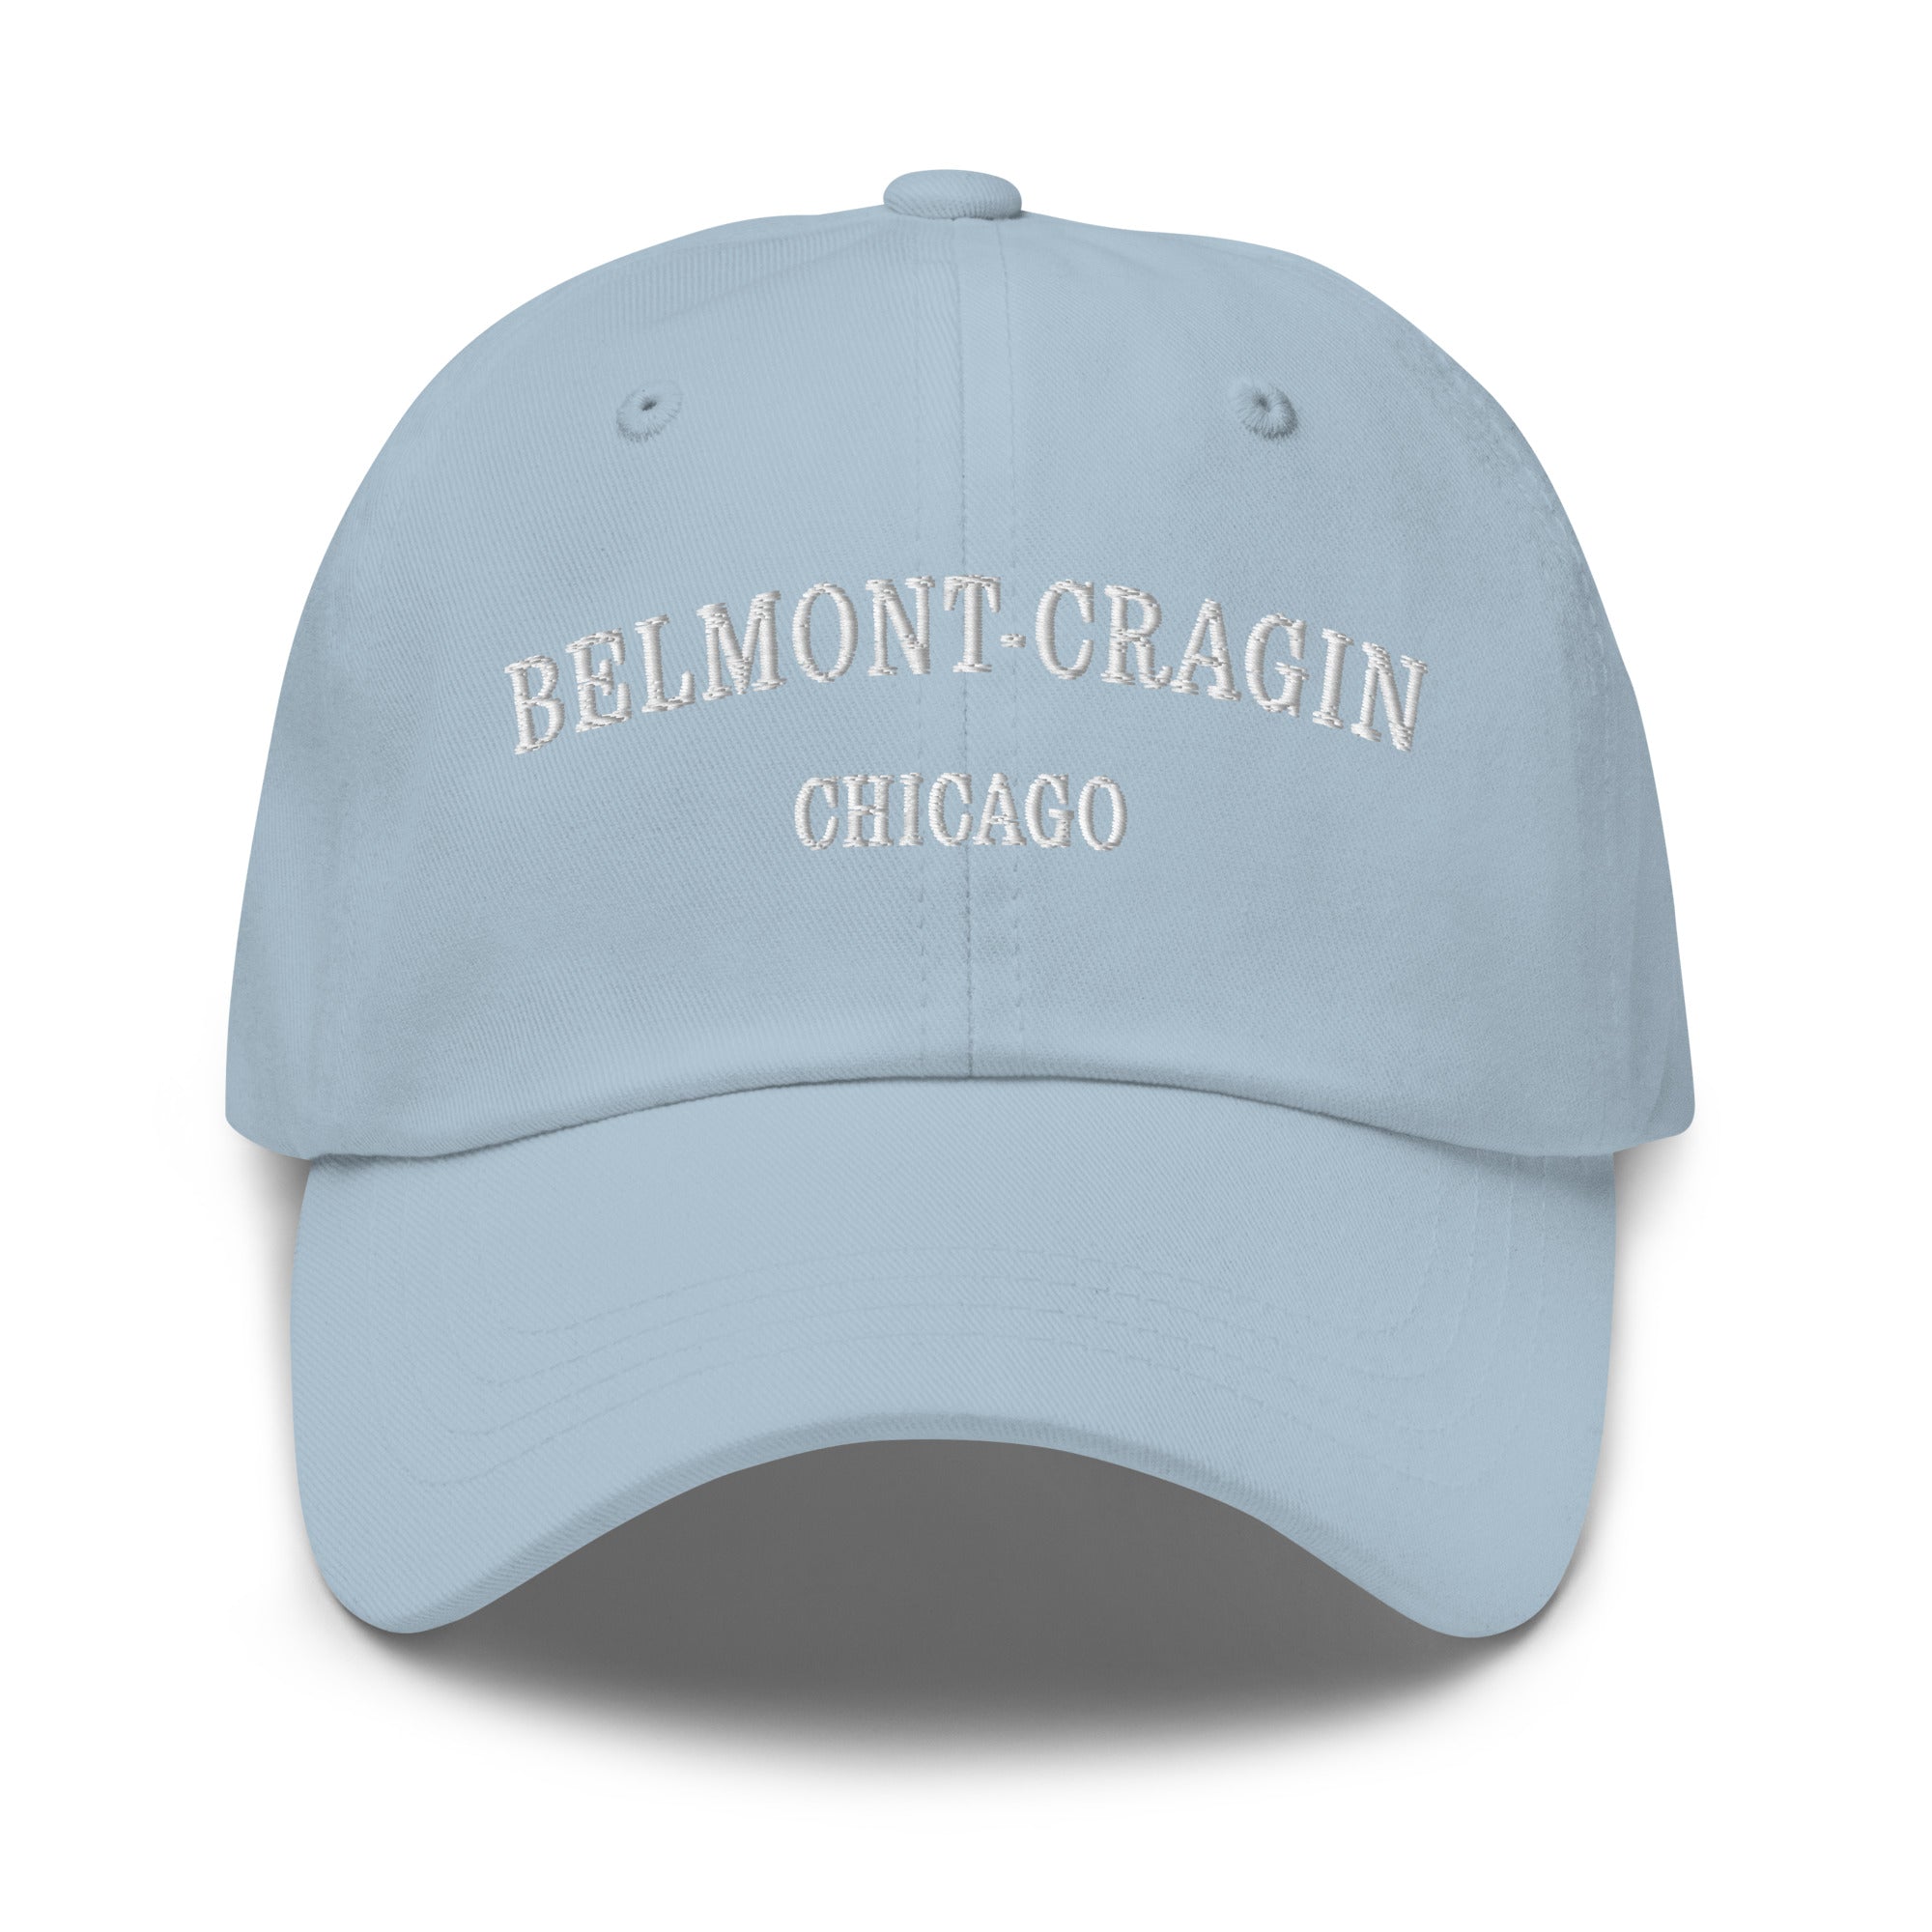 Belmont-Cragin Chicago Dad Hat